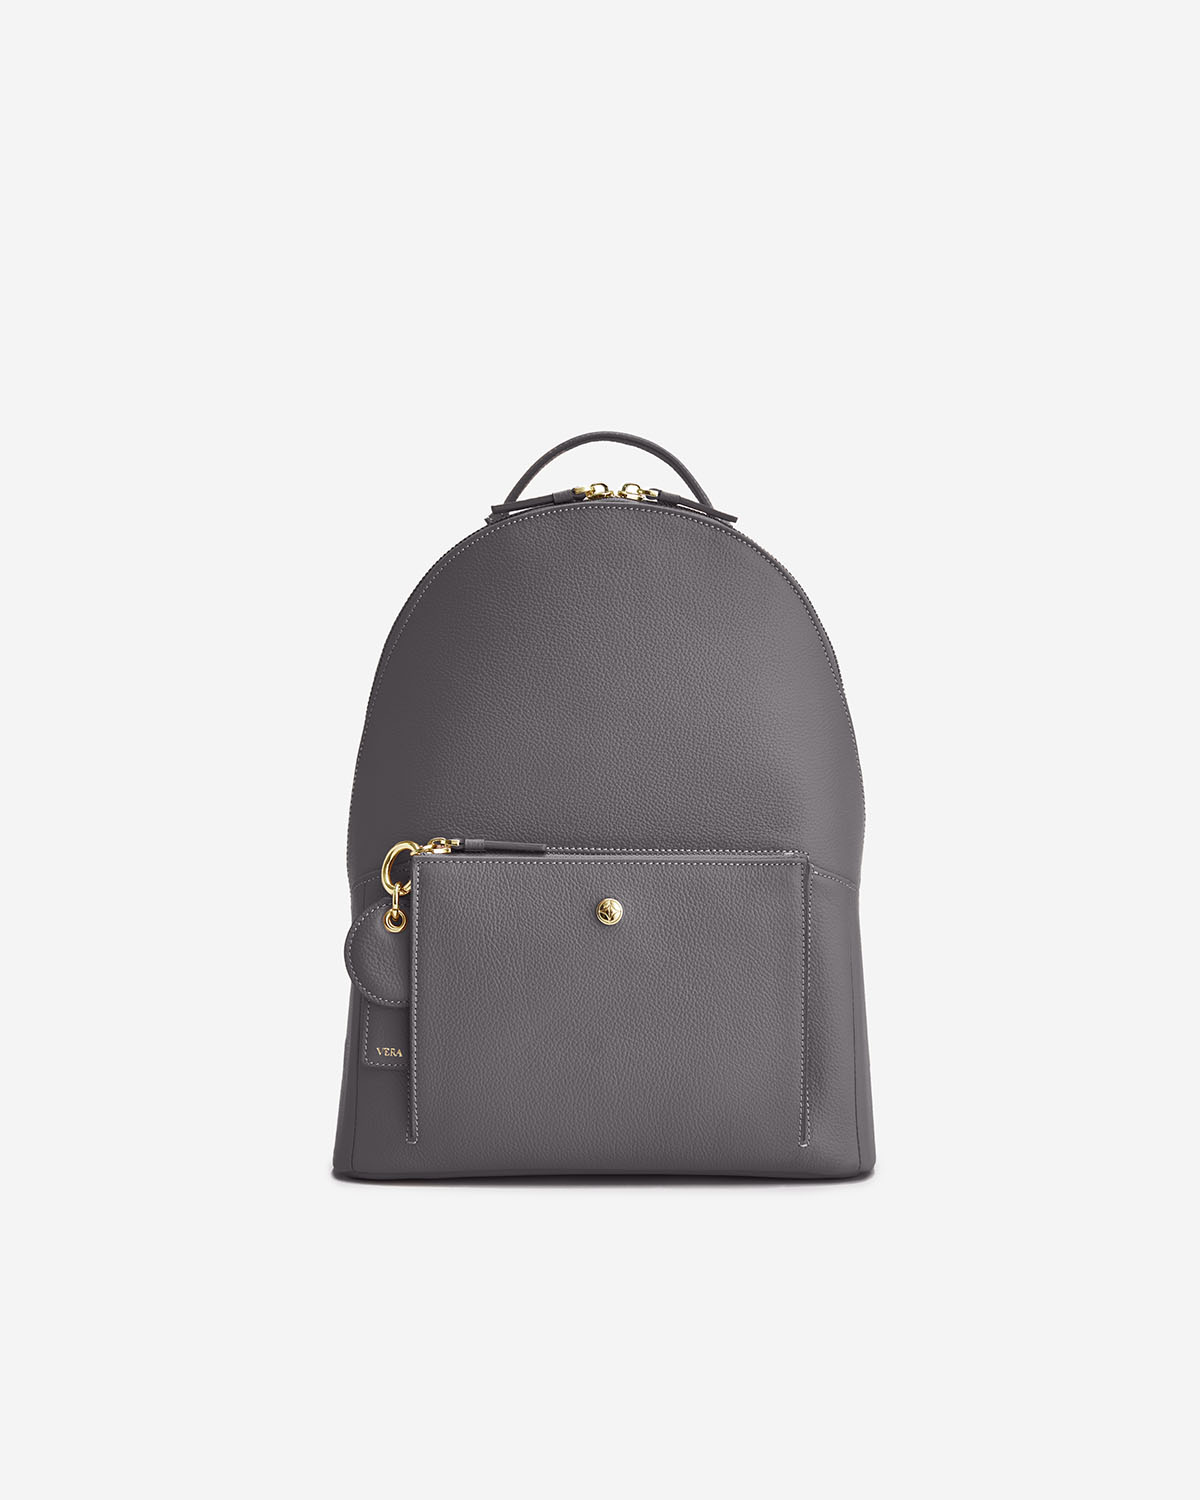 กระเป๋าเป้หนังแท้ VERA Journey Leather Backpack สี Paris Gray